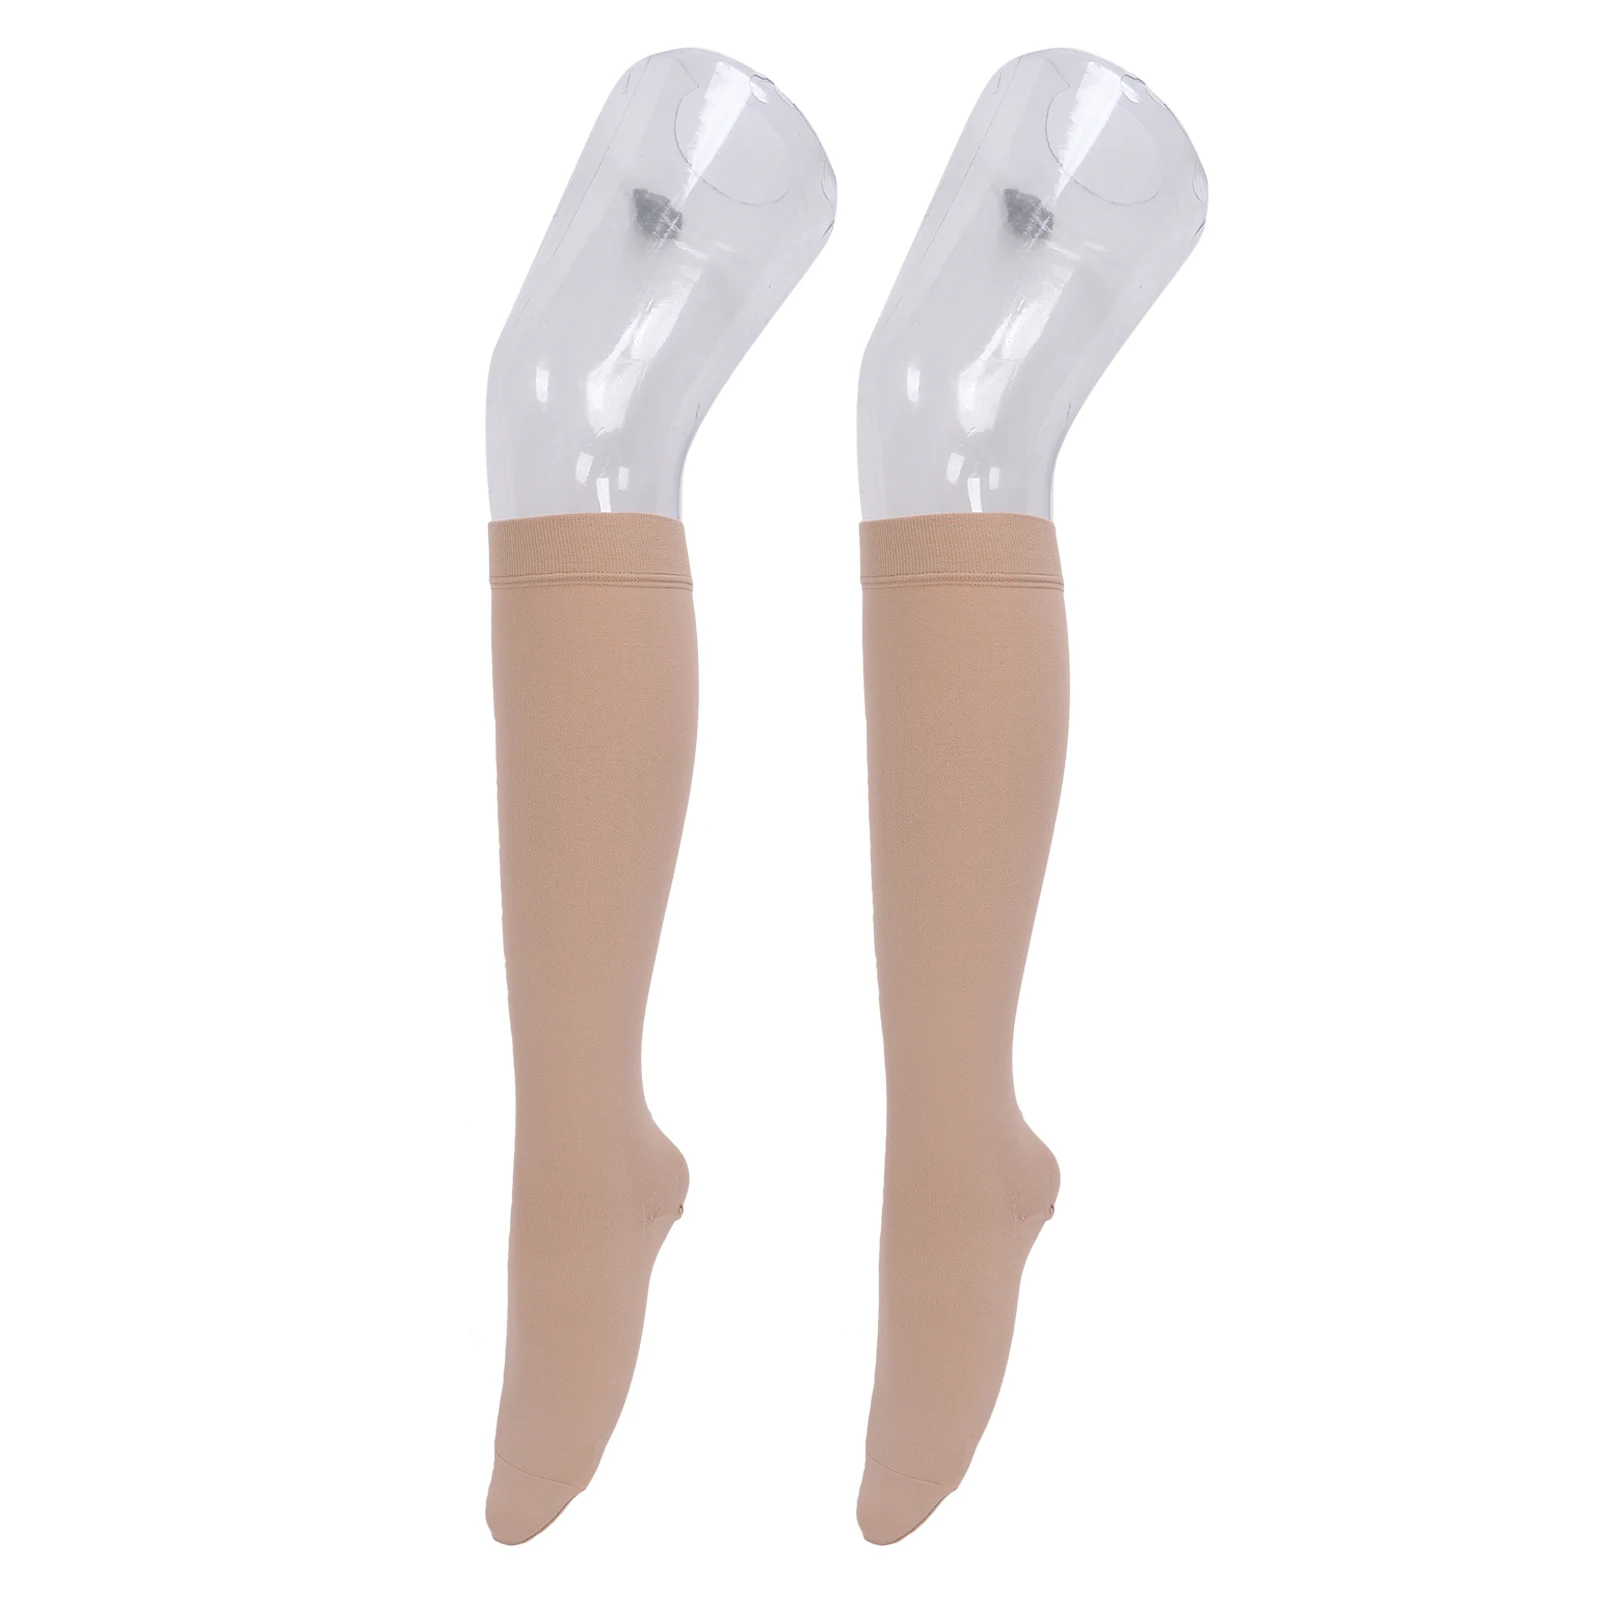 Компрессионные носки для икр с давлением 23-32 мм рт. ст., Высокоэластичные компрессионные чулки для снятия отеков при варикозном расширении вен